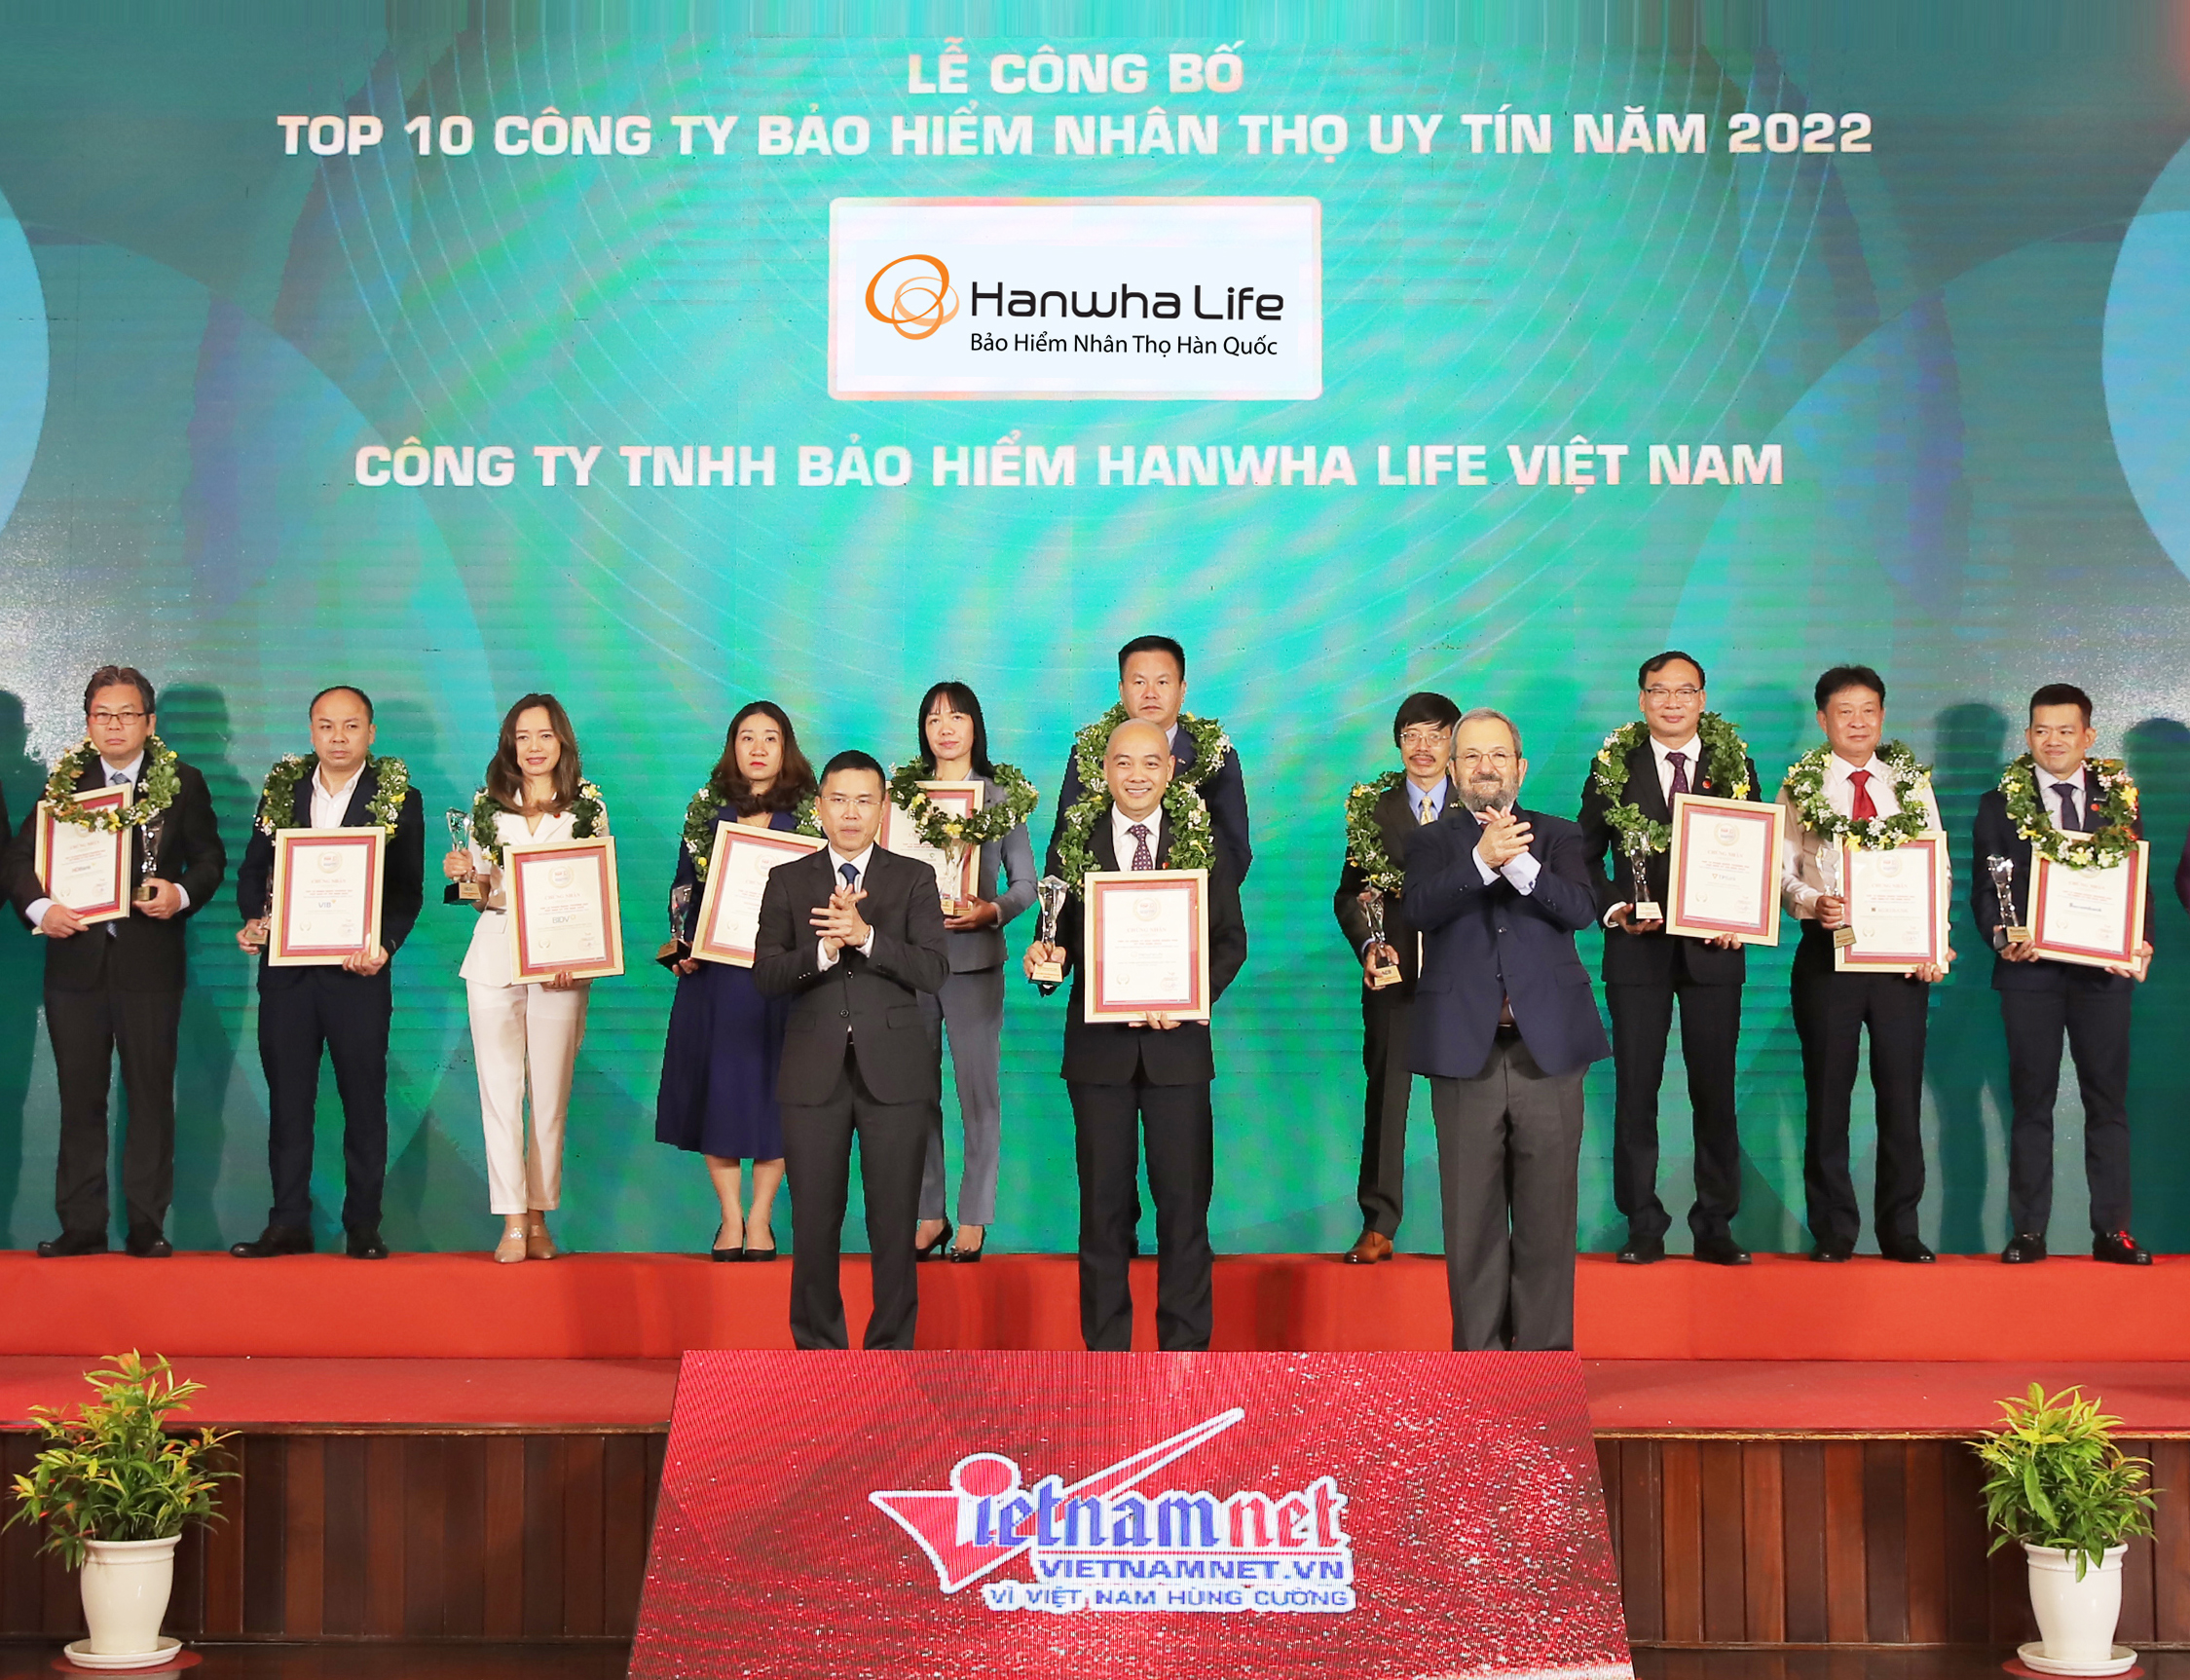 Hanwha Life Việt Nam nhận danh hiệu “Top 10 Công ty Bảo hiểm uy tín năm 2022”